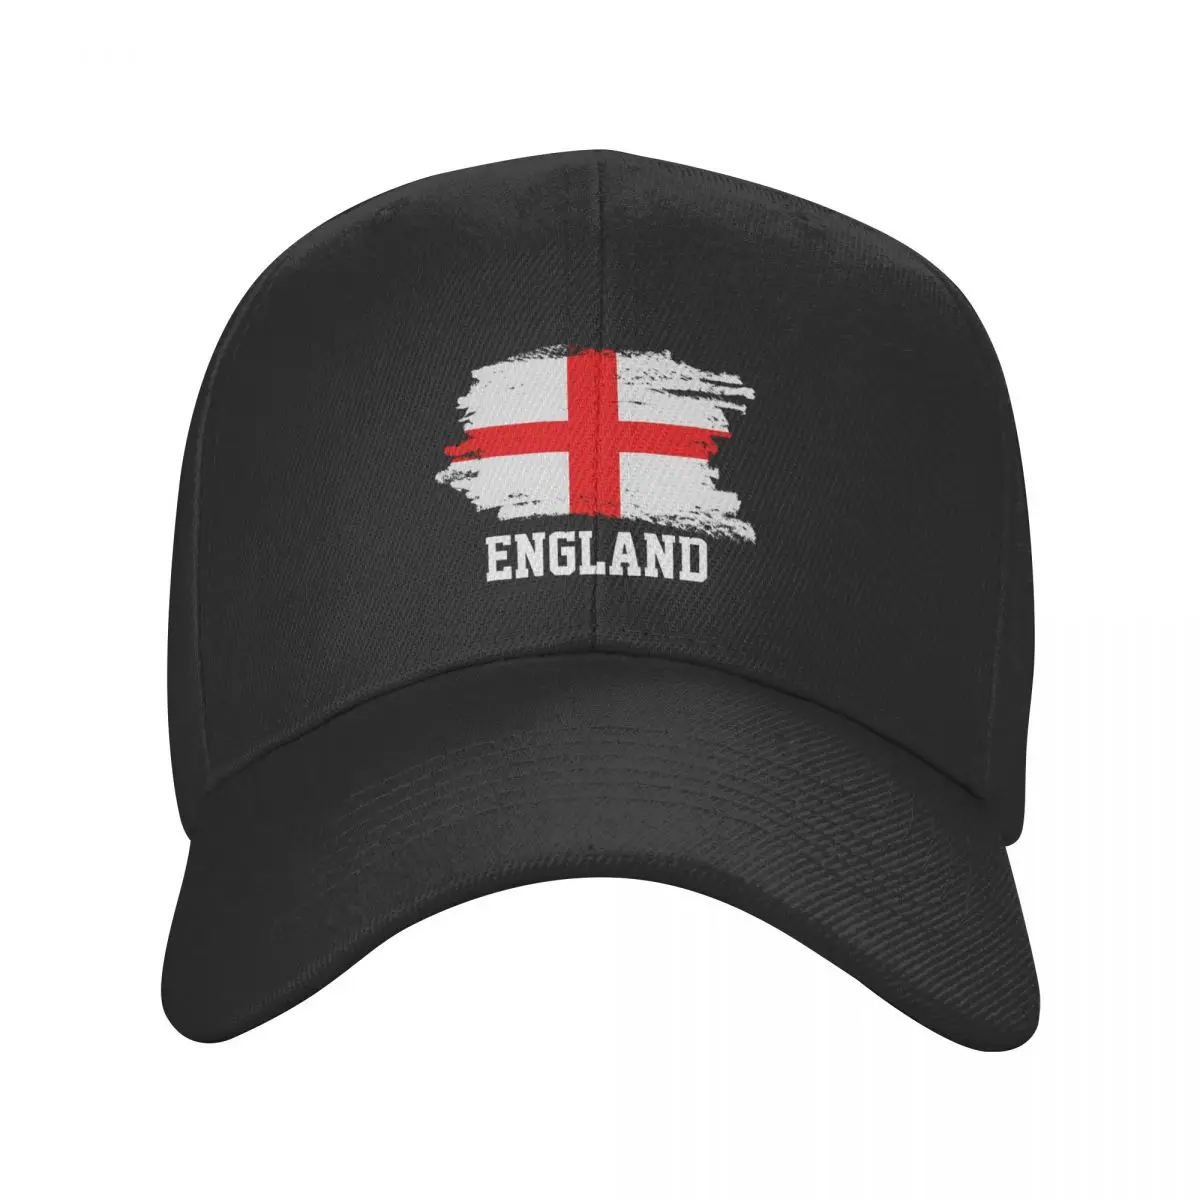 

New Punk Unisex Engl Flag Baseball Cap Adult UK Union Jack British Proud Adjustable Dad Hat Sun Protection Snapback Caps